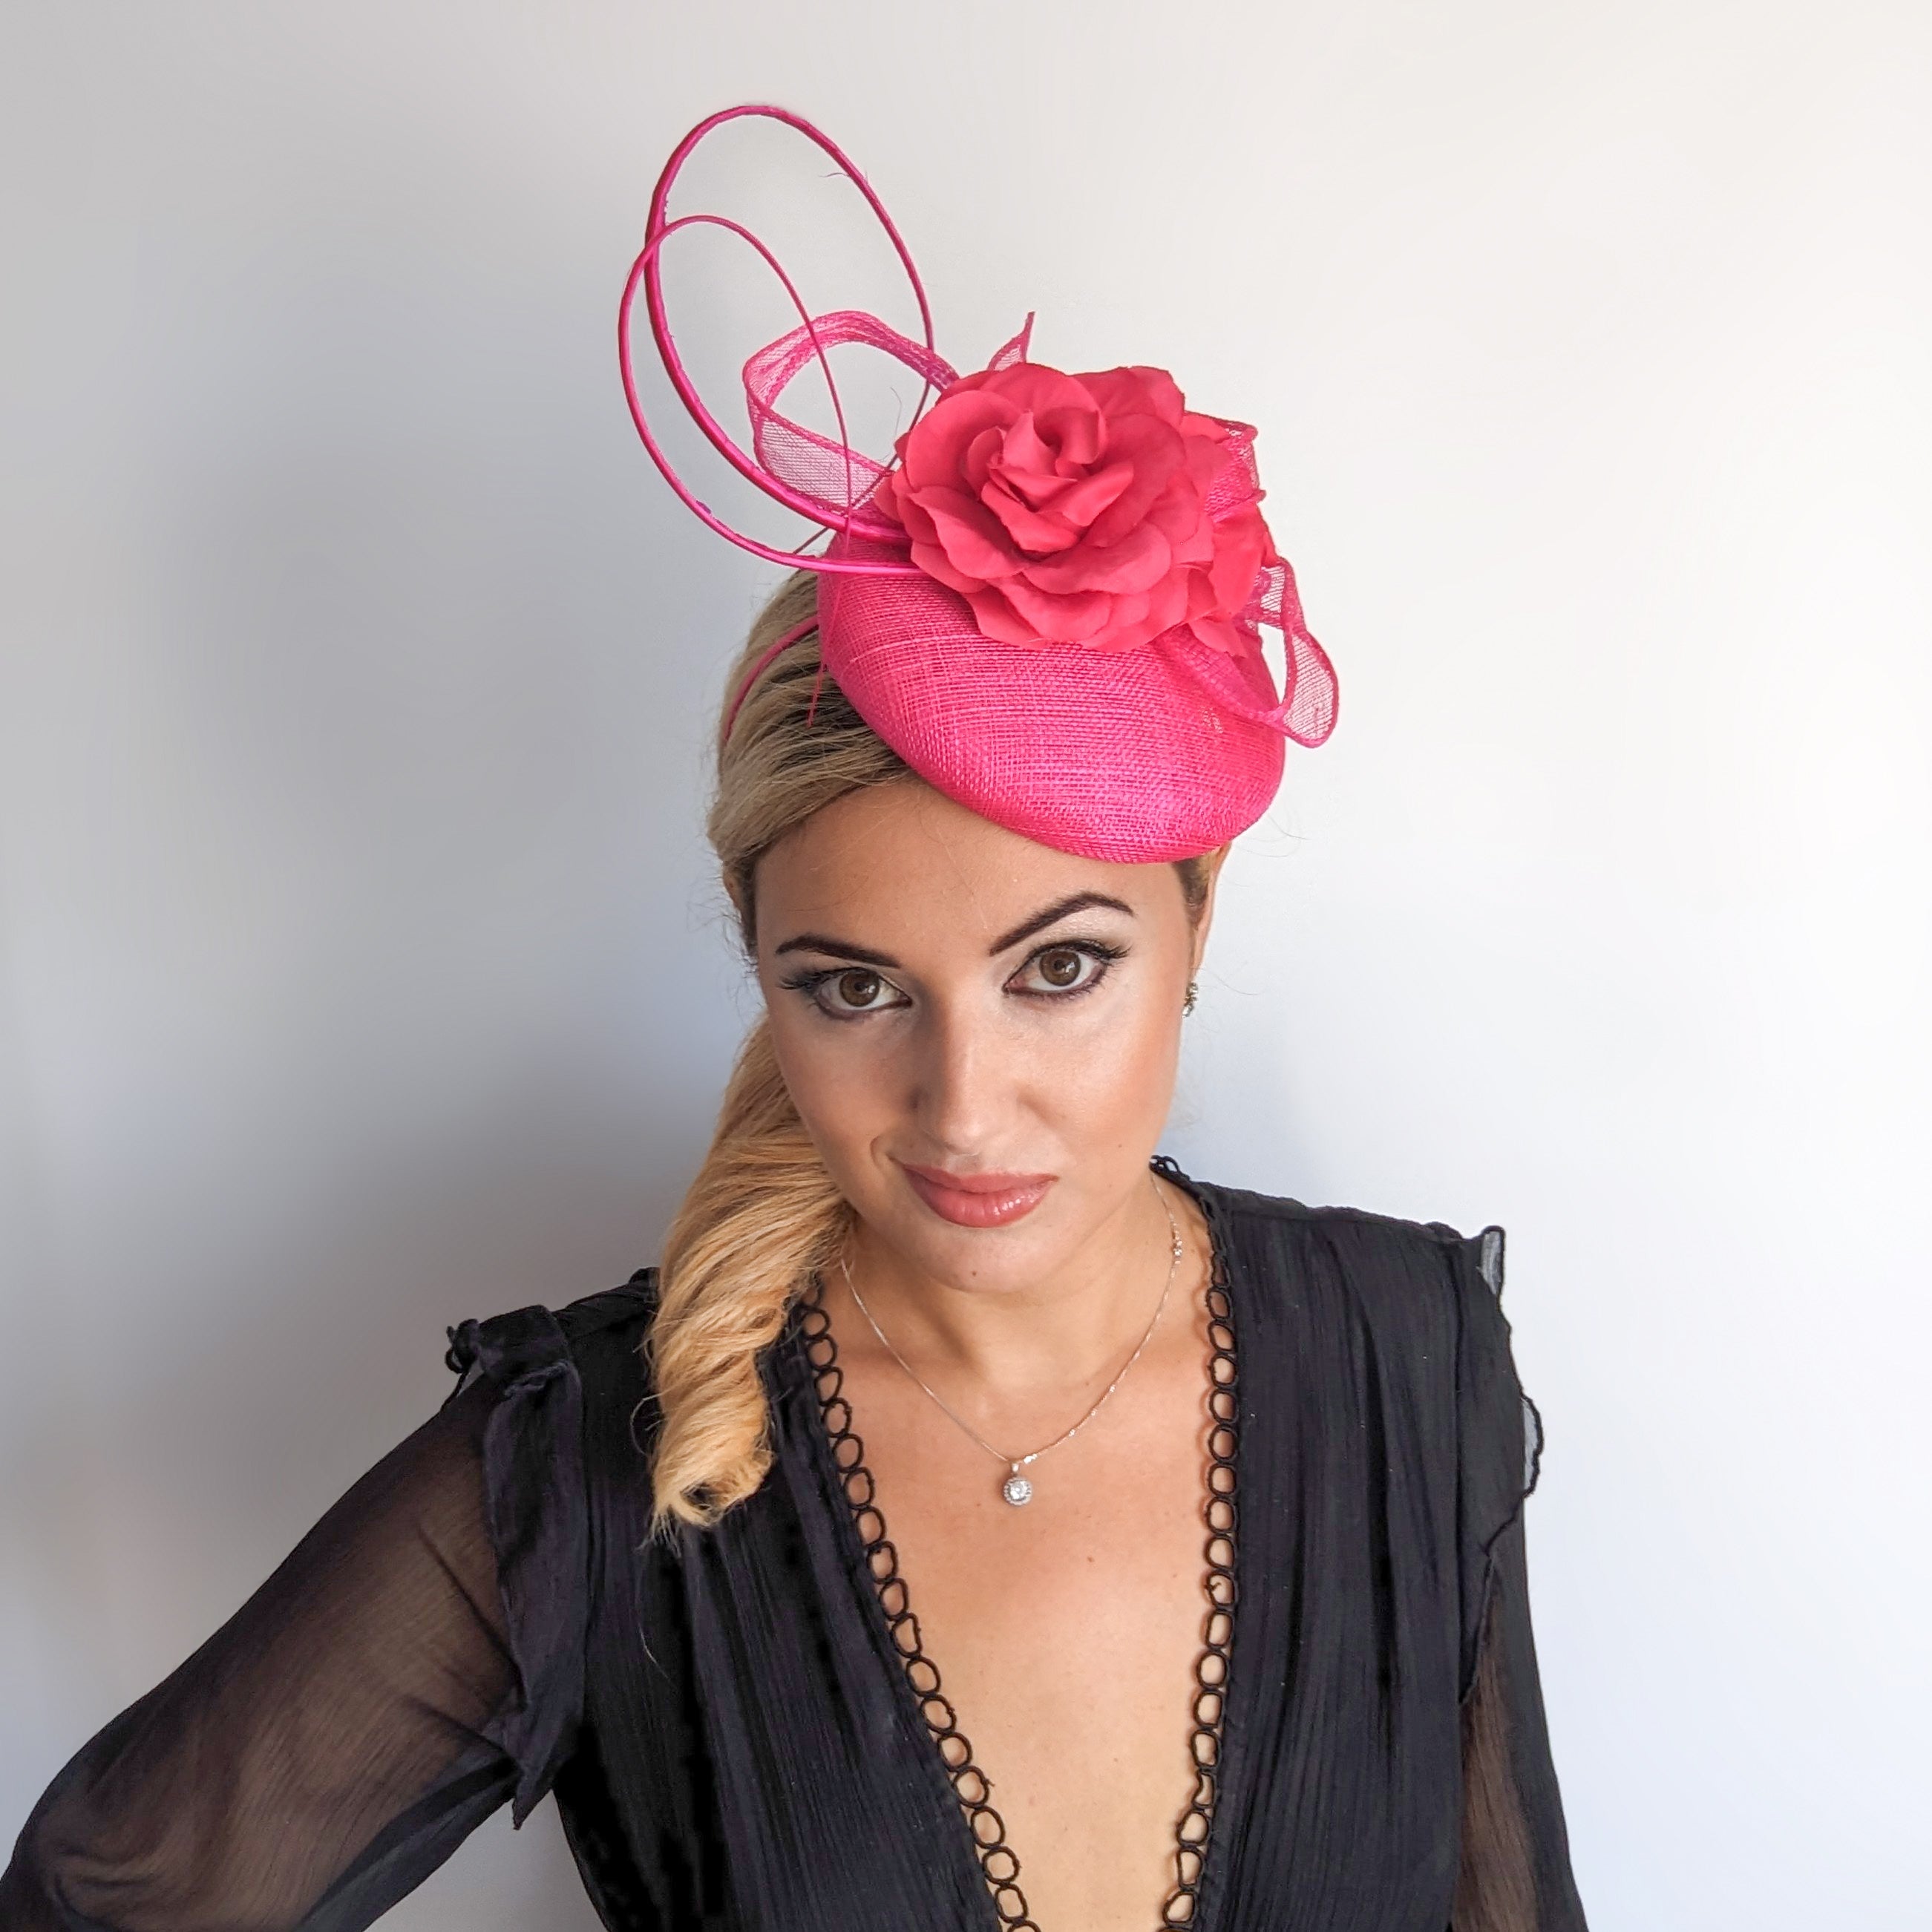 Hot pink flower fascinator hat